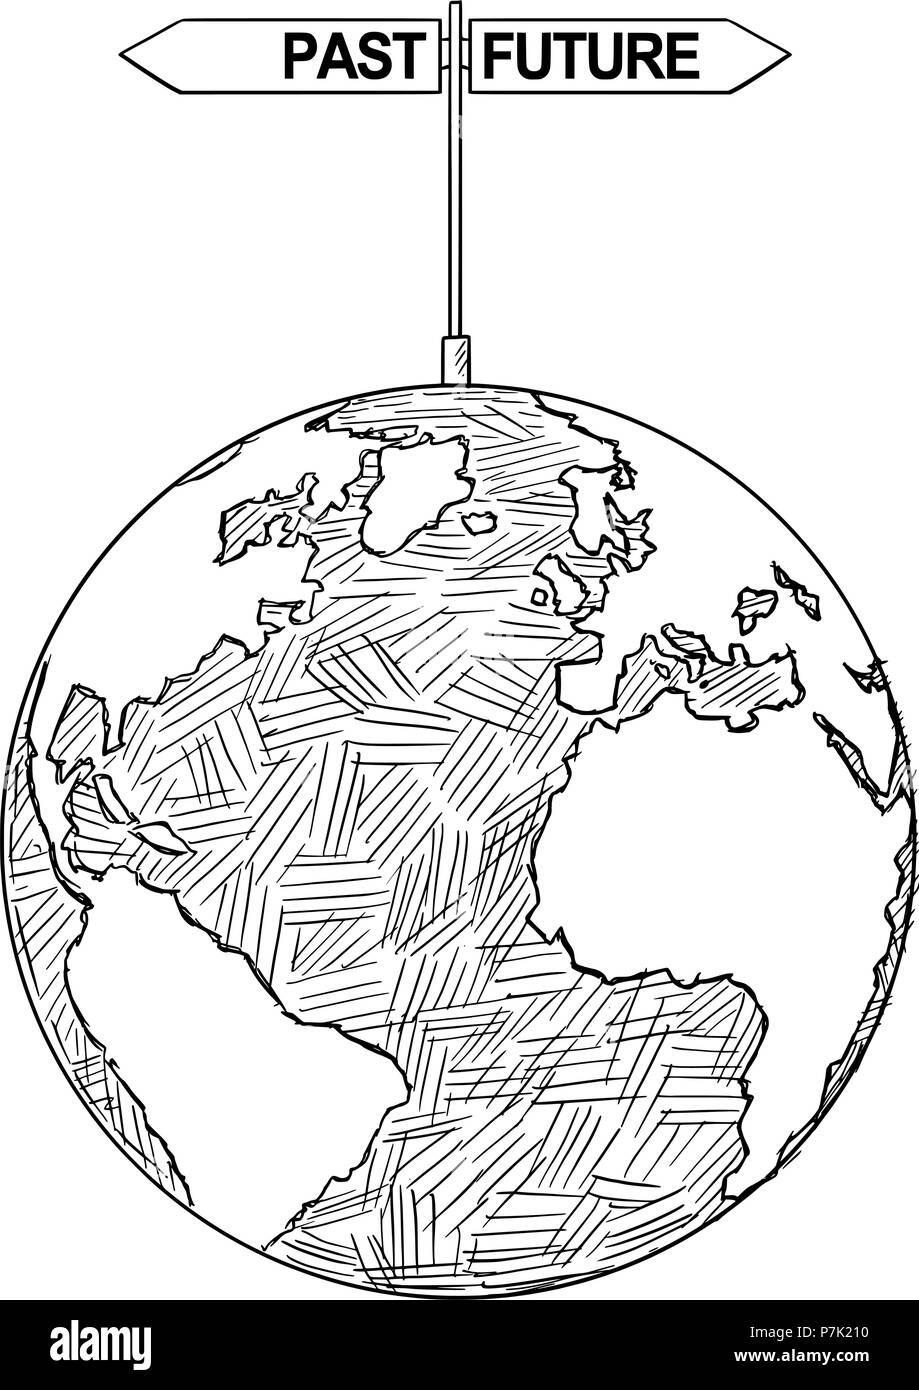 Vektor Künstlerische Zeichnung Abbildung der Welt Globus mit Vergangenheit und Zukunft Entscheidung Pfeile Stock Vektor